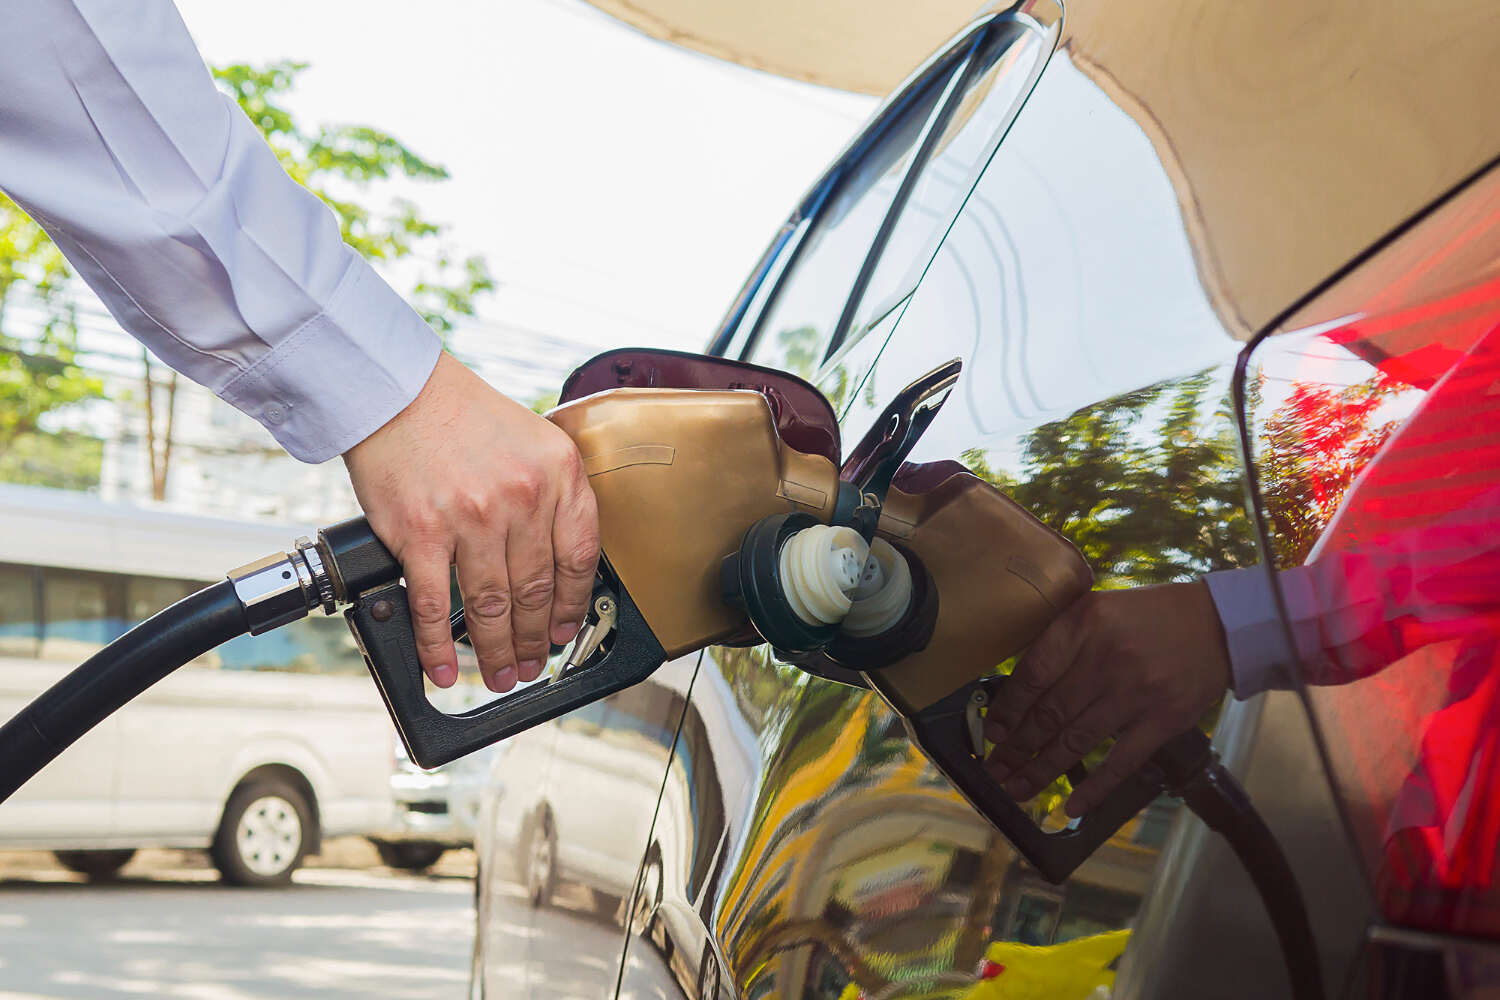 لاتقوم بتعبئة خزان الوقود الخاص بسيارتك حتى آخره لهذا السبب؟